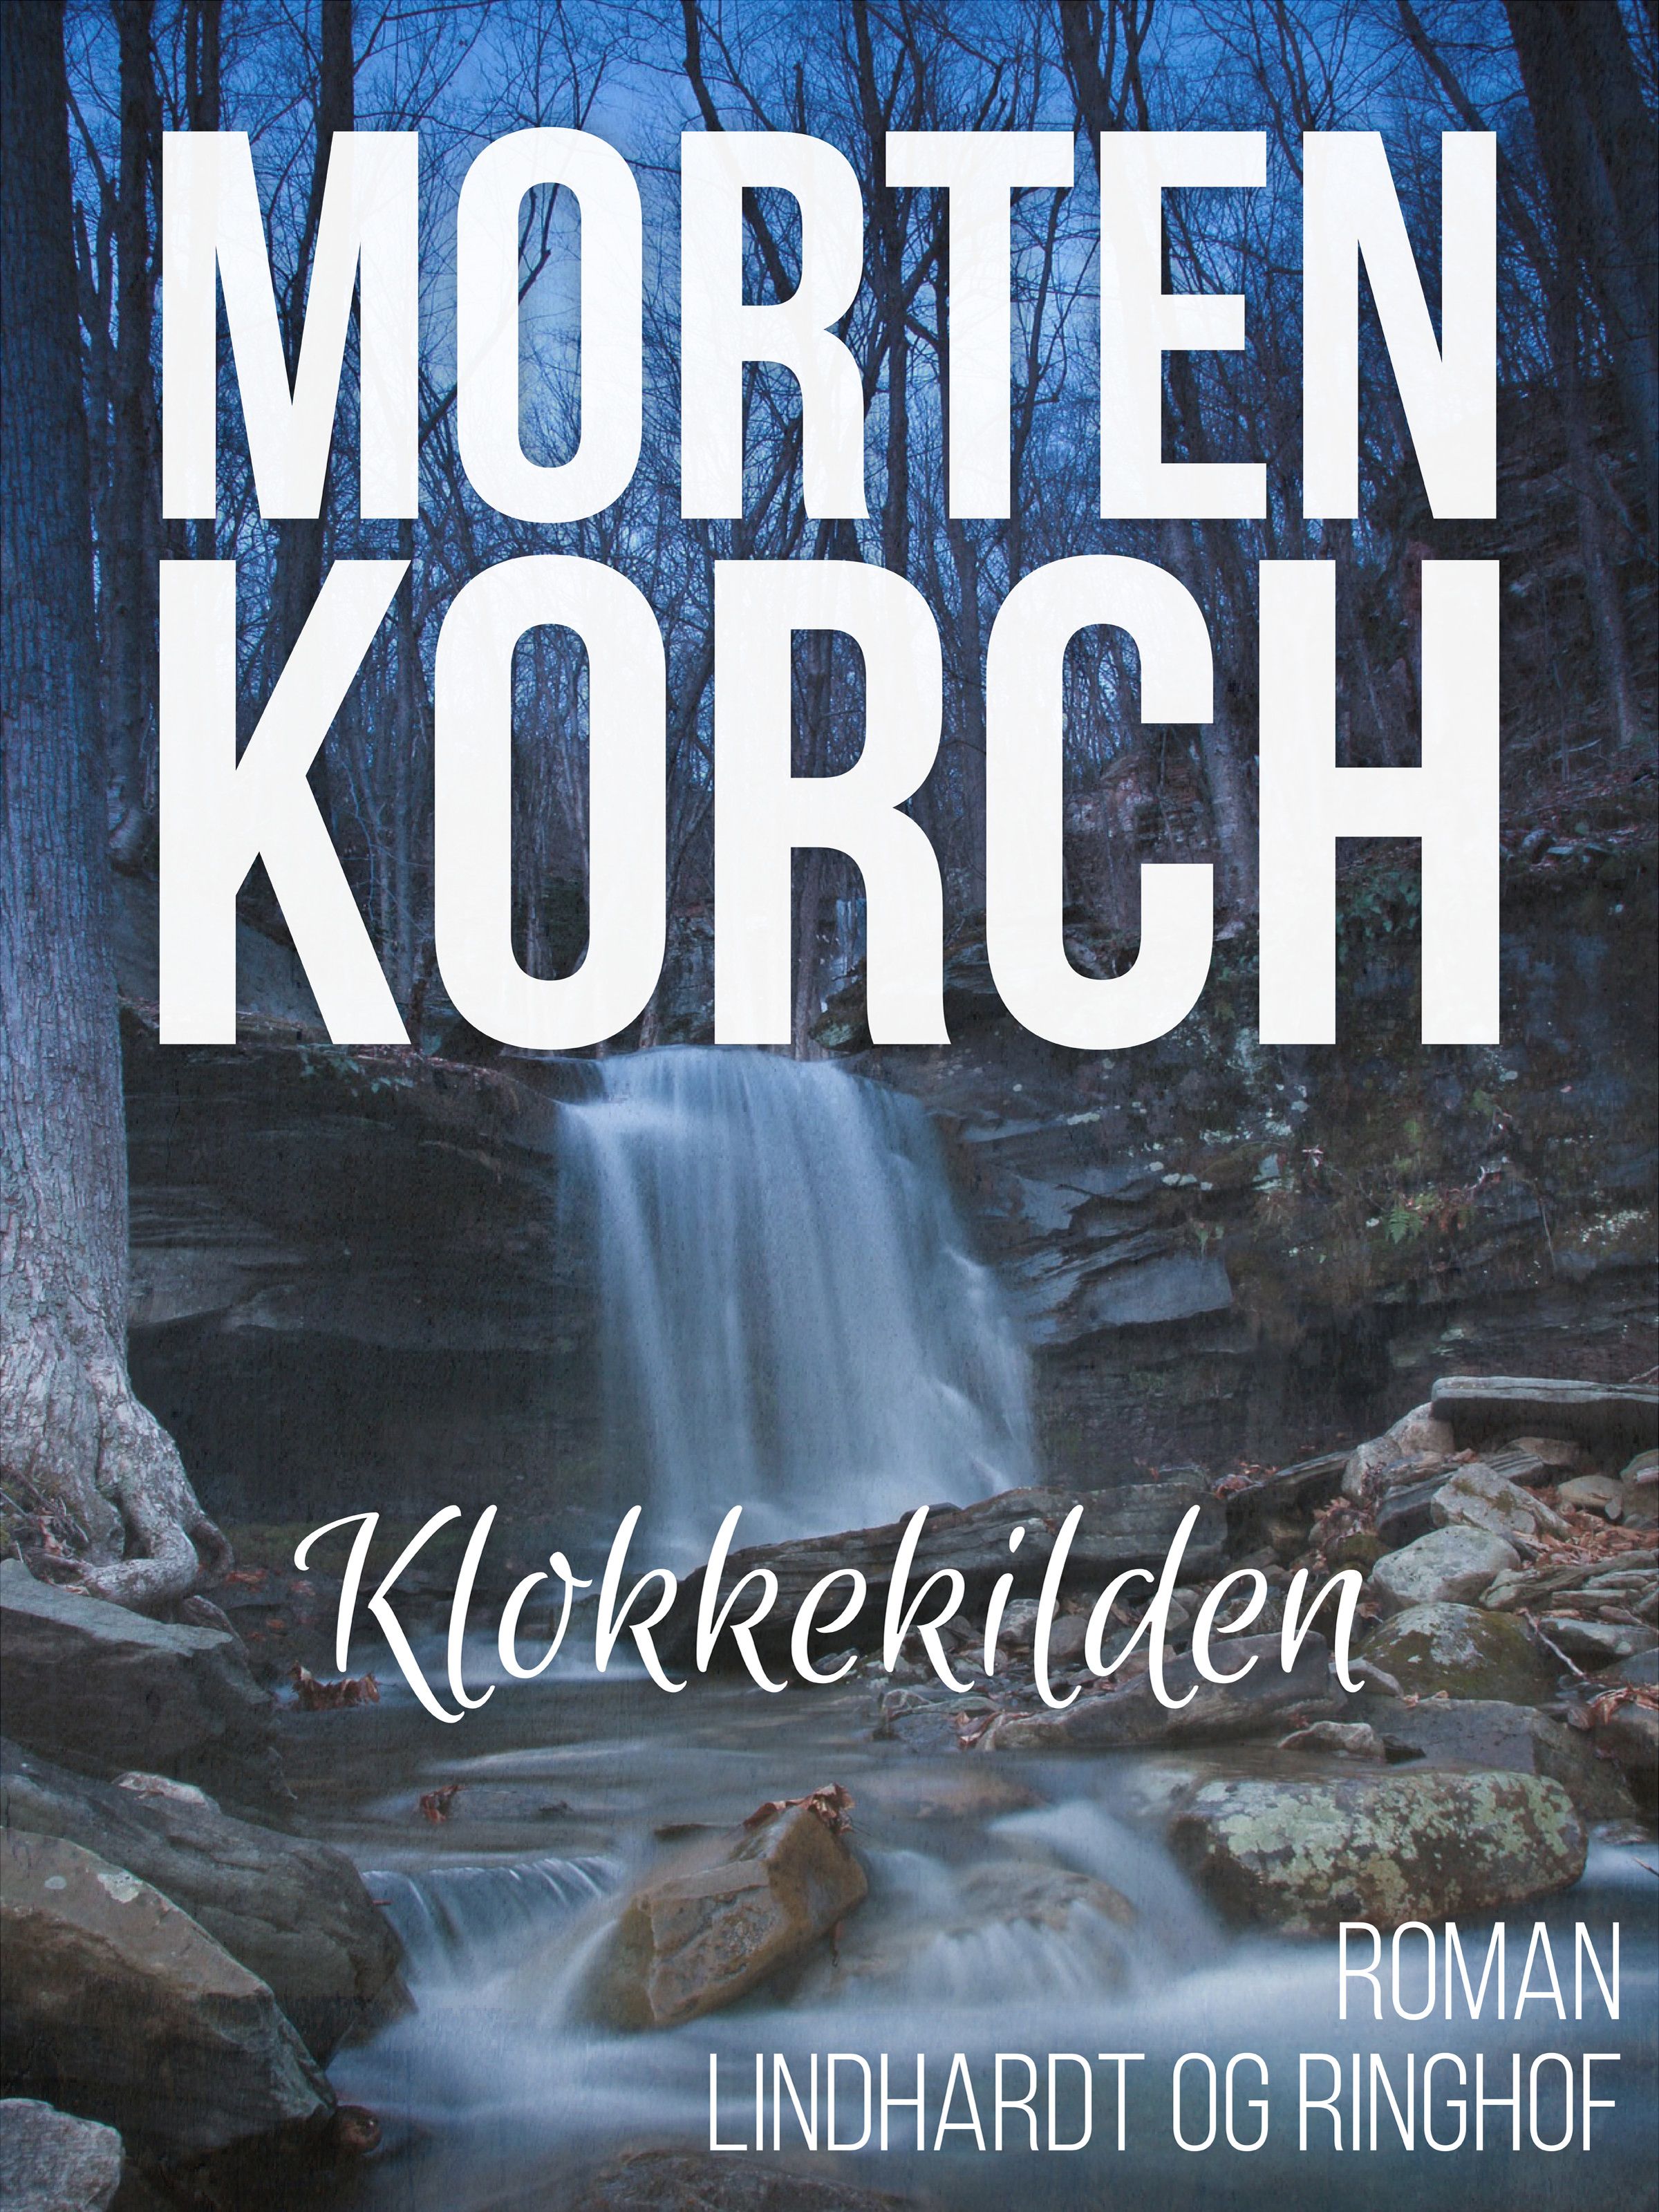 Klokkekilden, e-bok av Morten Korch